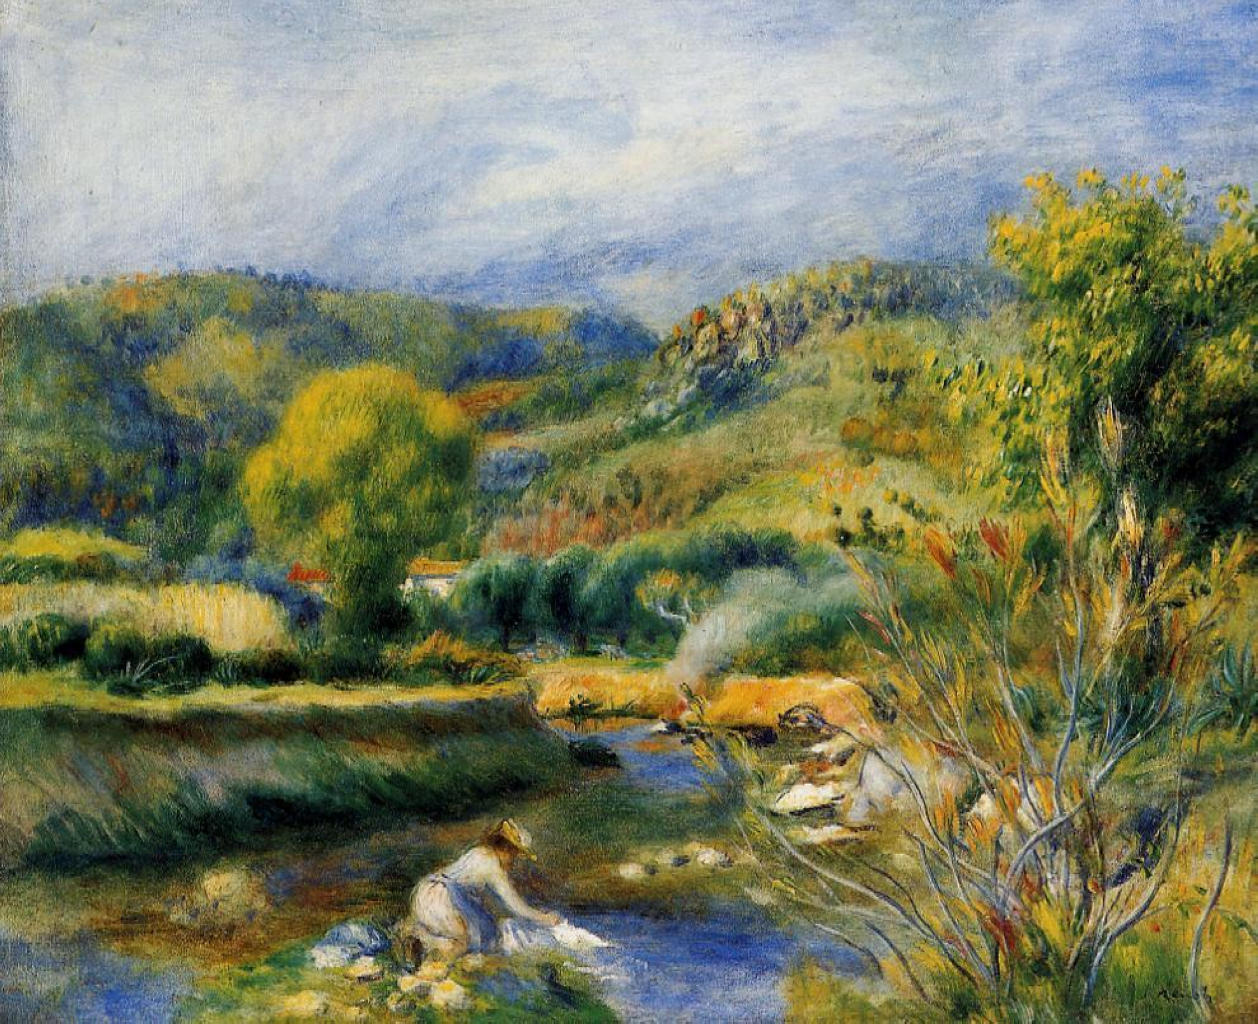 Pierre+Auguste+Renoir-1841-1-19 (669).jpg